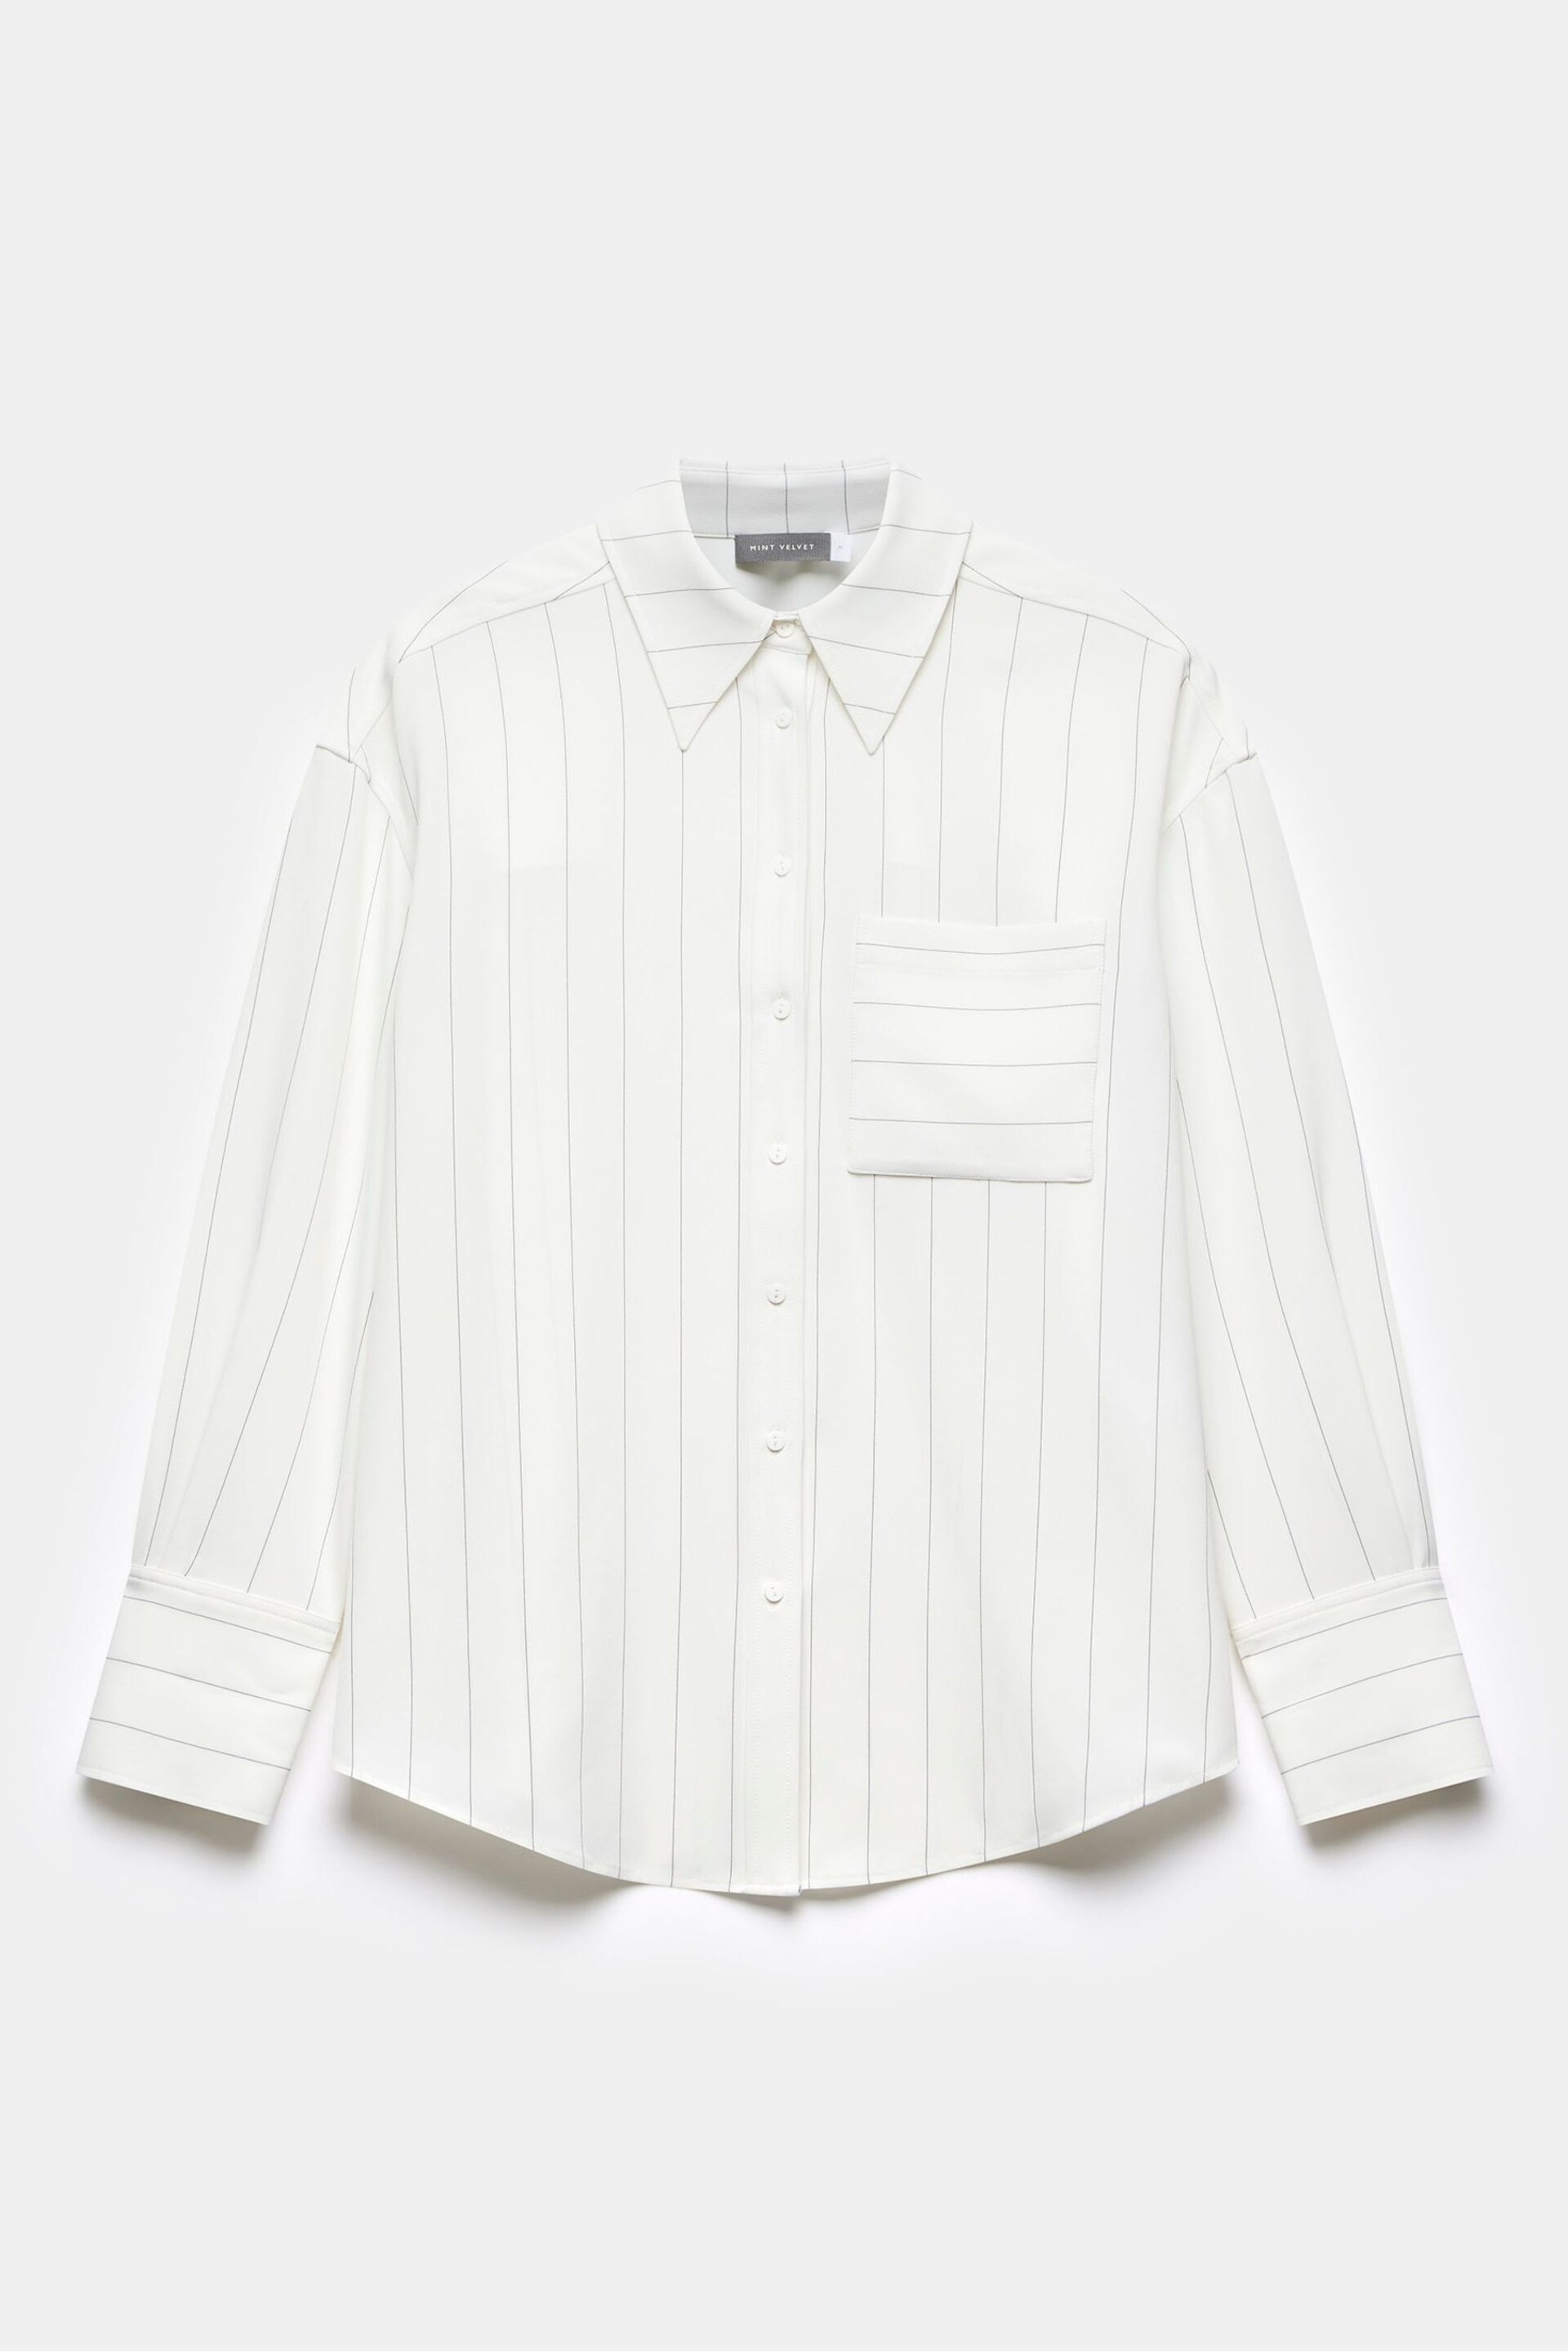 Mint Velvet White Oversized Pinstripe Shirt - Image 3 of 4